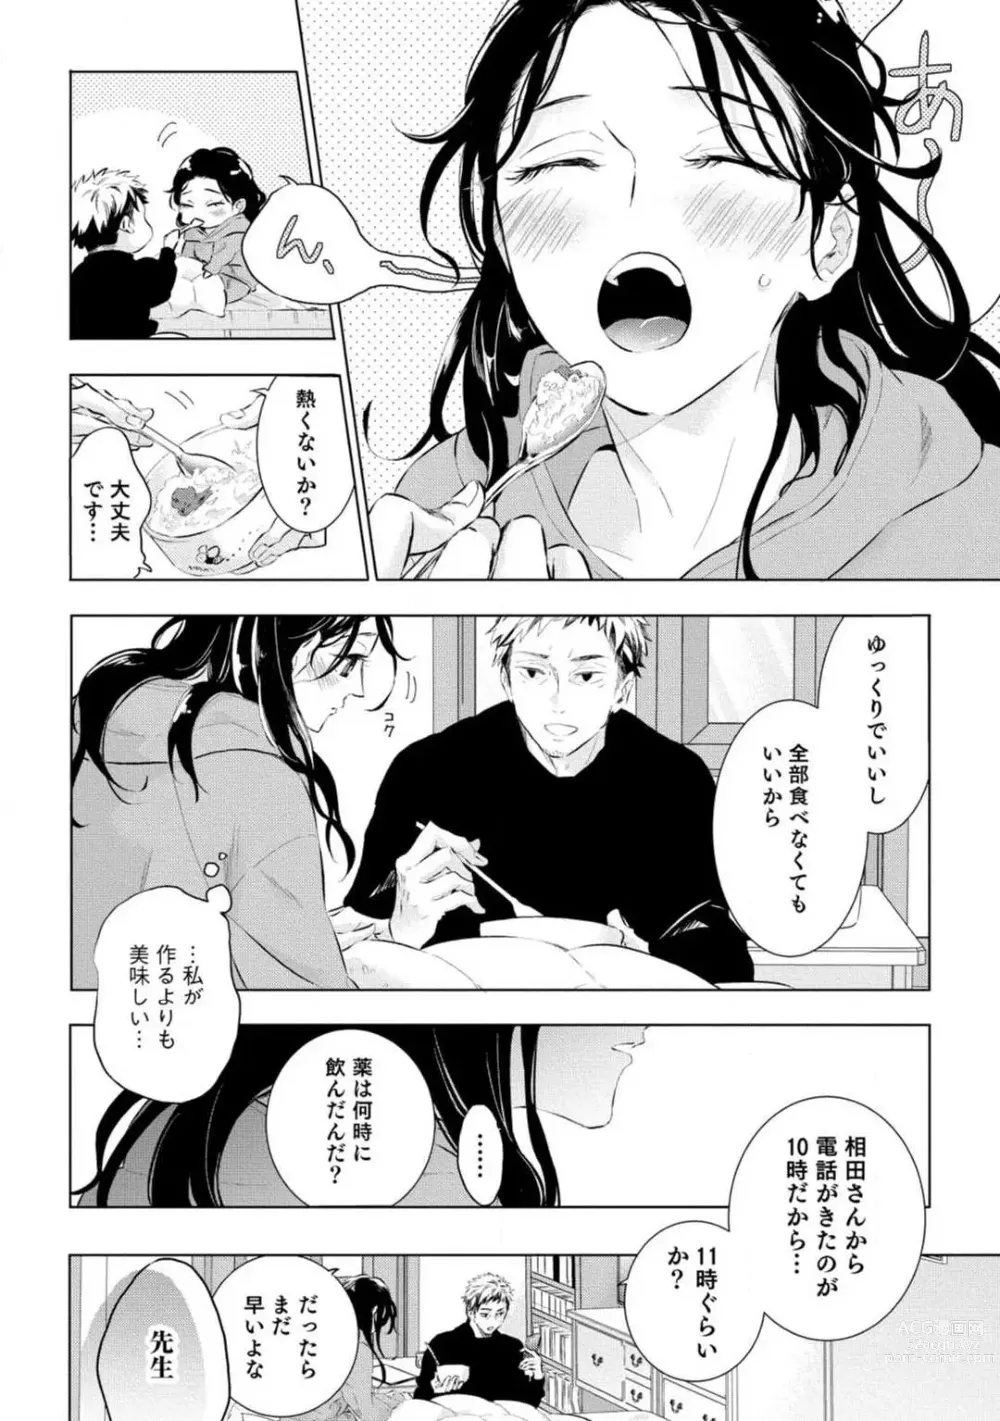 Page 267 of manga Yumemiru Henshuu-sha to Mukiryoku Shousetsuka 1-11